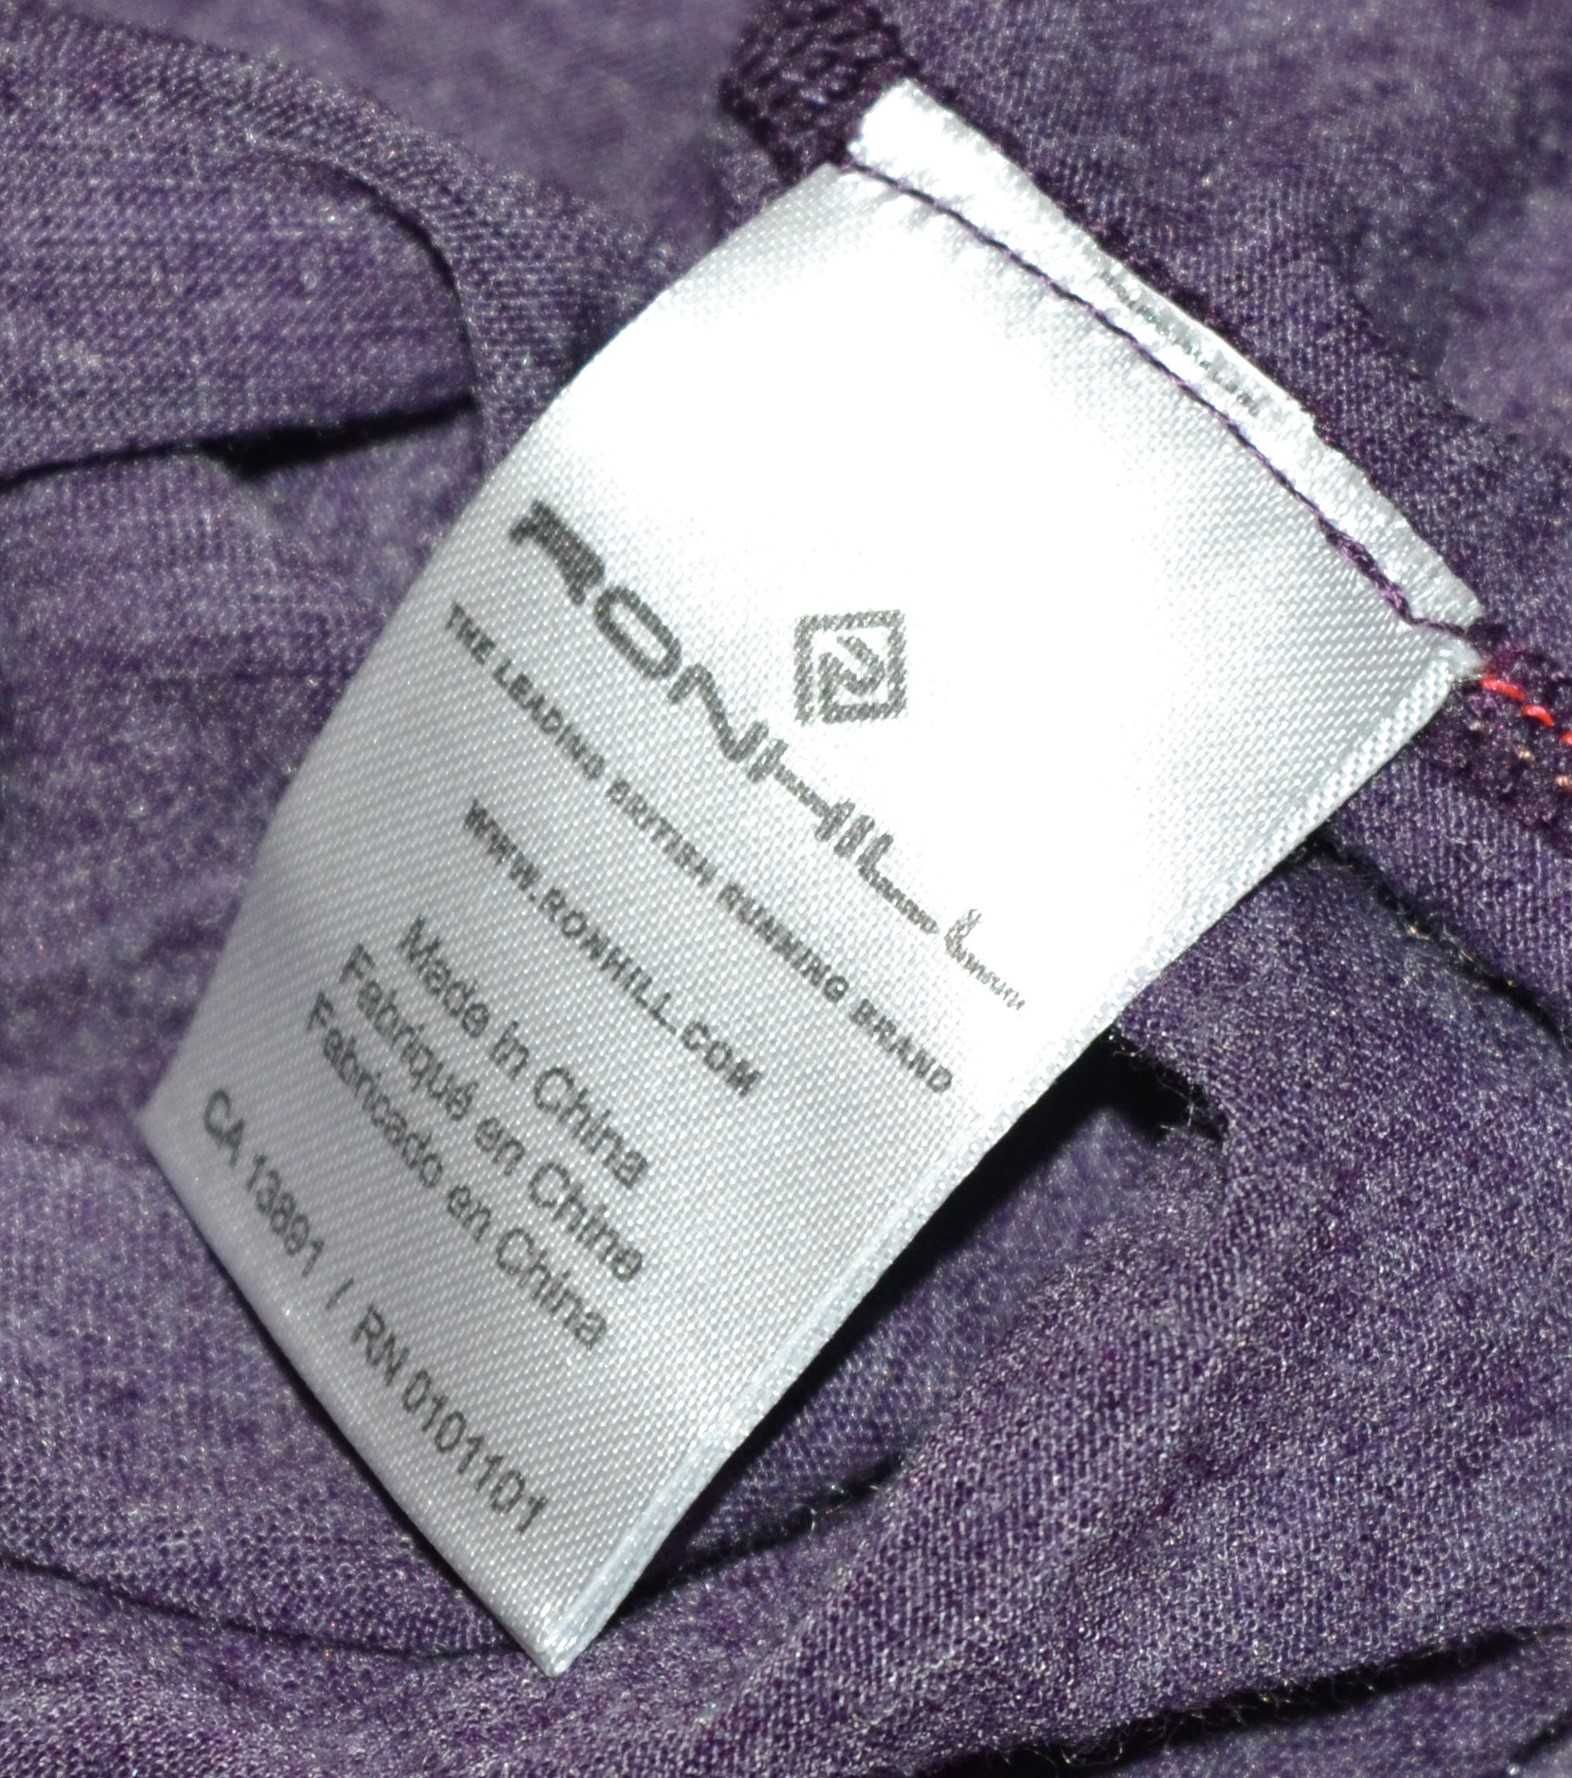 Ronhill fioletowa bluza sportowa zip-up wełna defekt 44